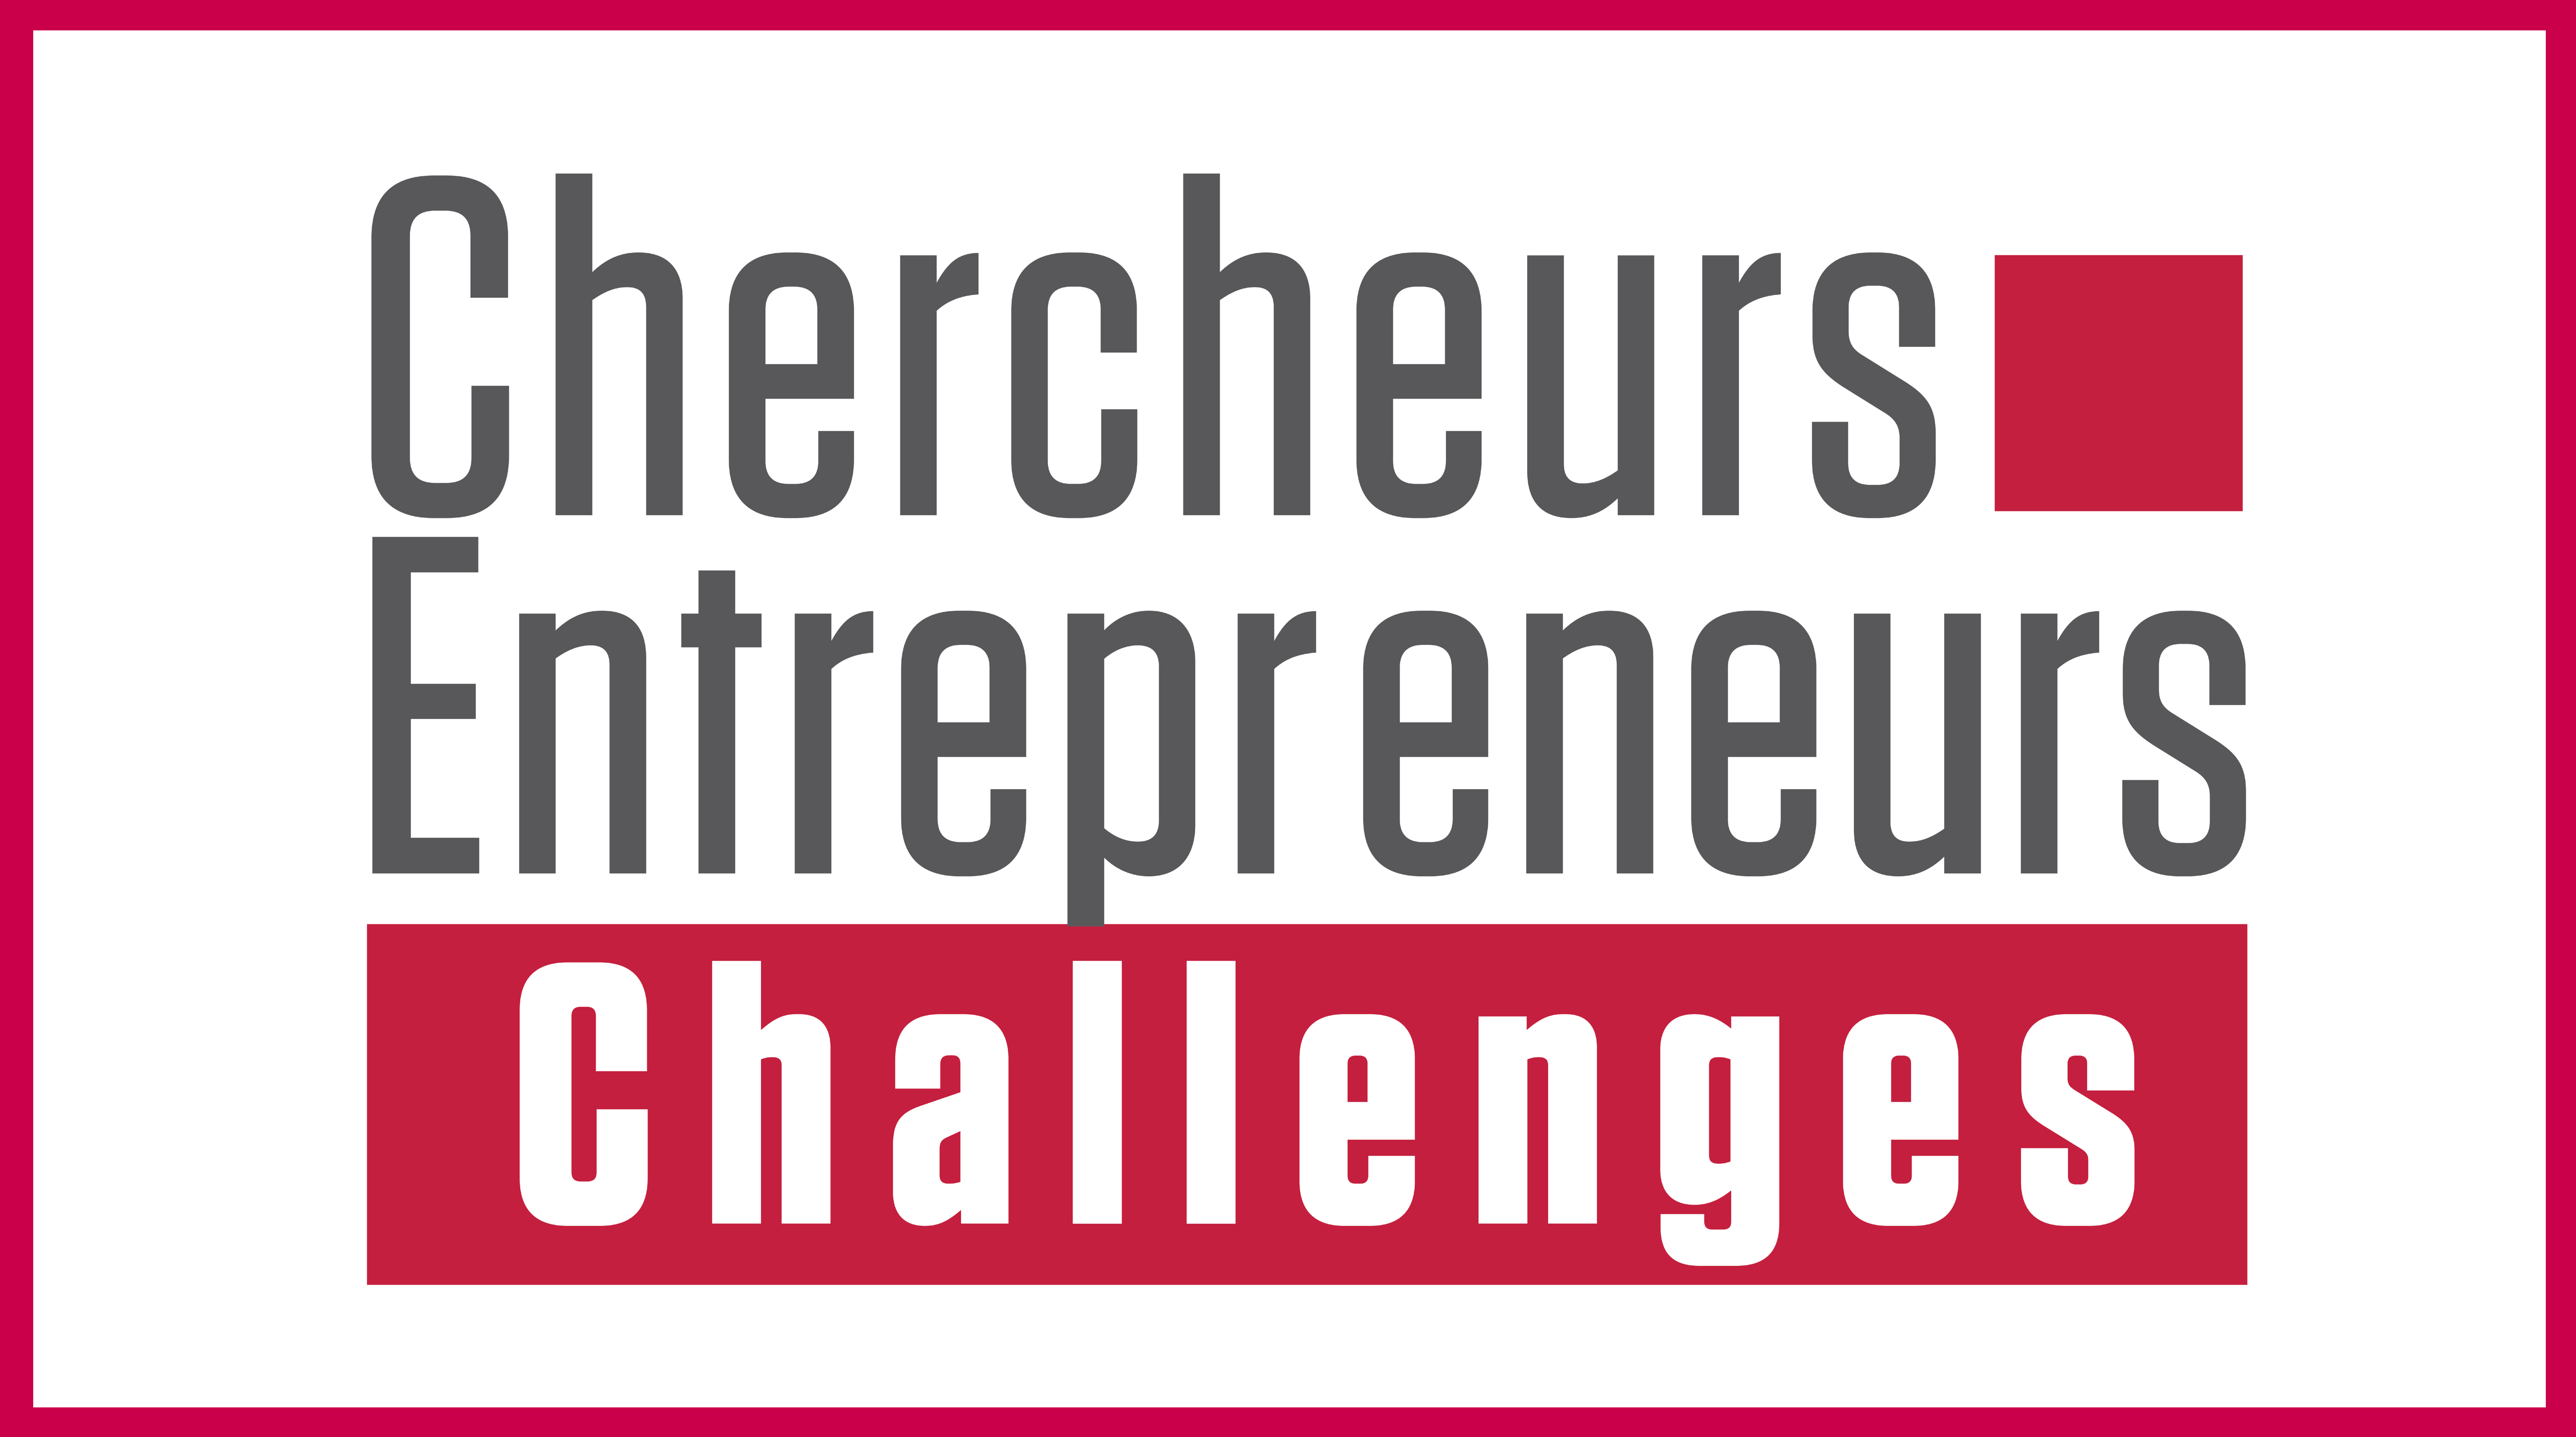 Chercheurs-Entrepreneurs Challenges Grand Est